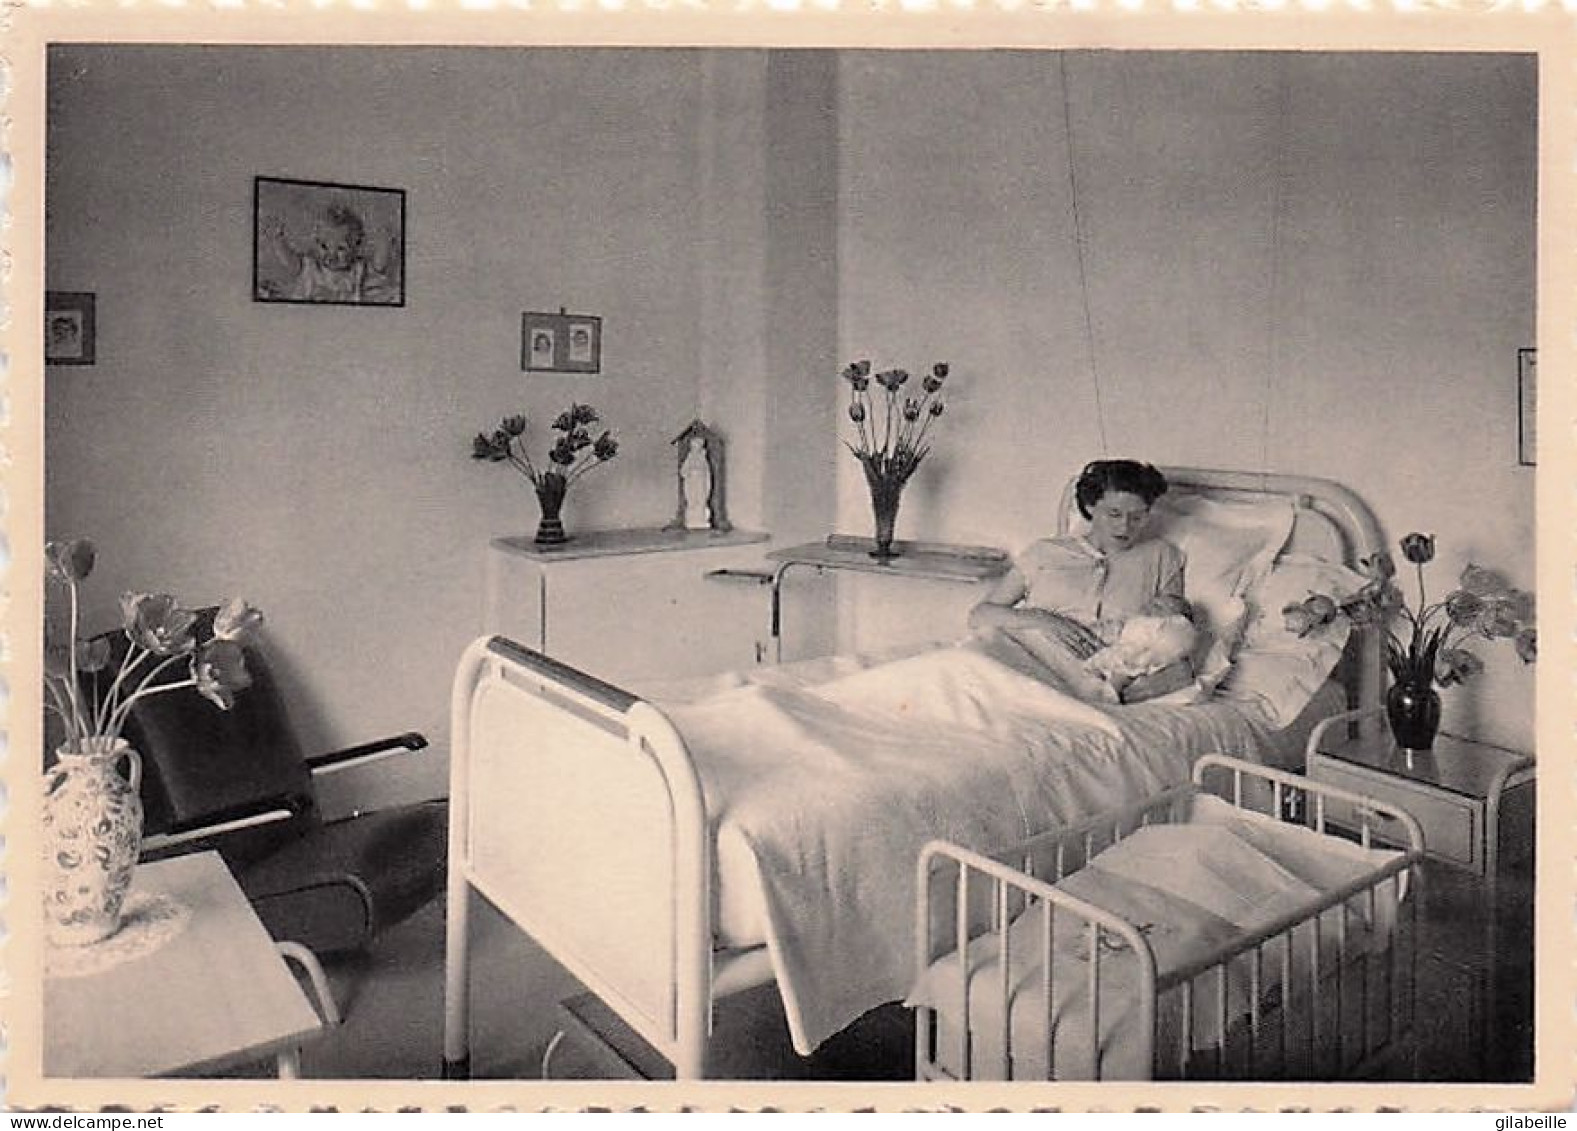 BORNEM - St Jozefklinick - O.L V moederhuis - Mediche dienst - 15 kunstzichtkaarten - in perfecte staat